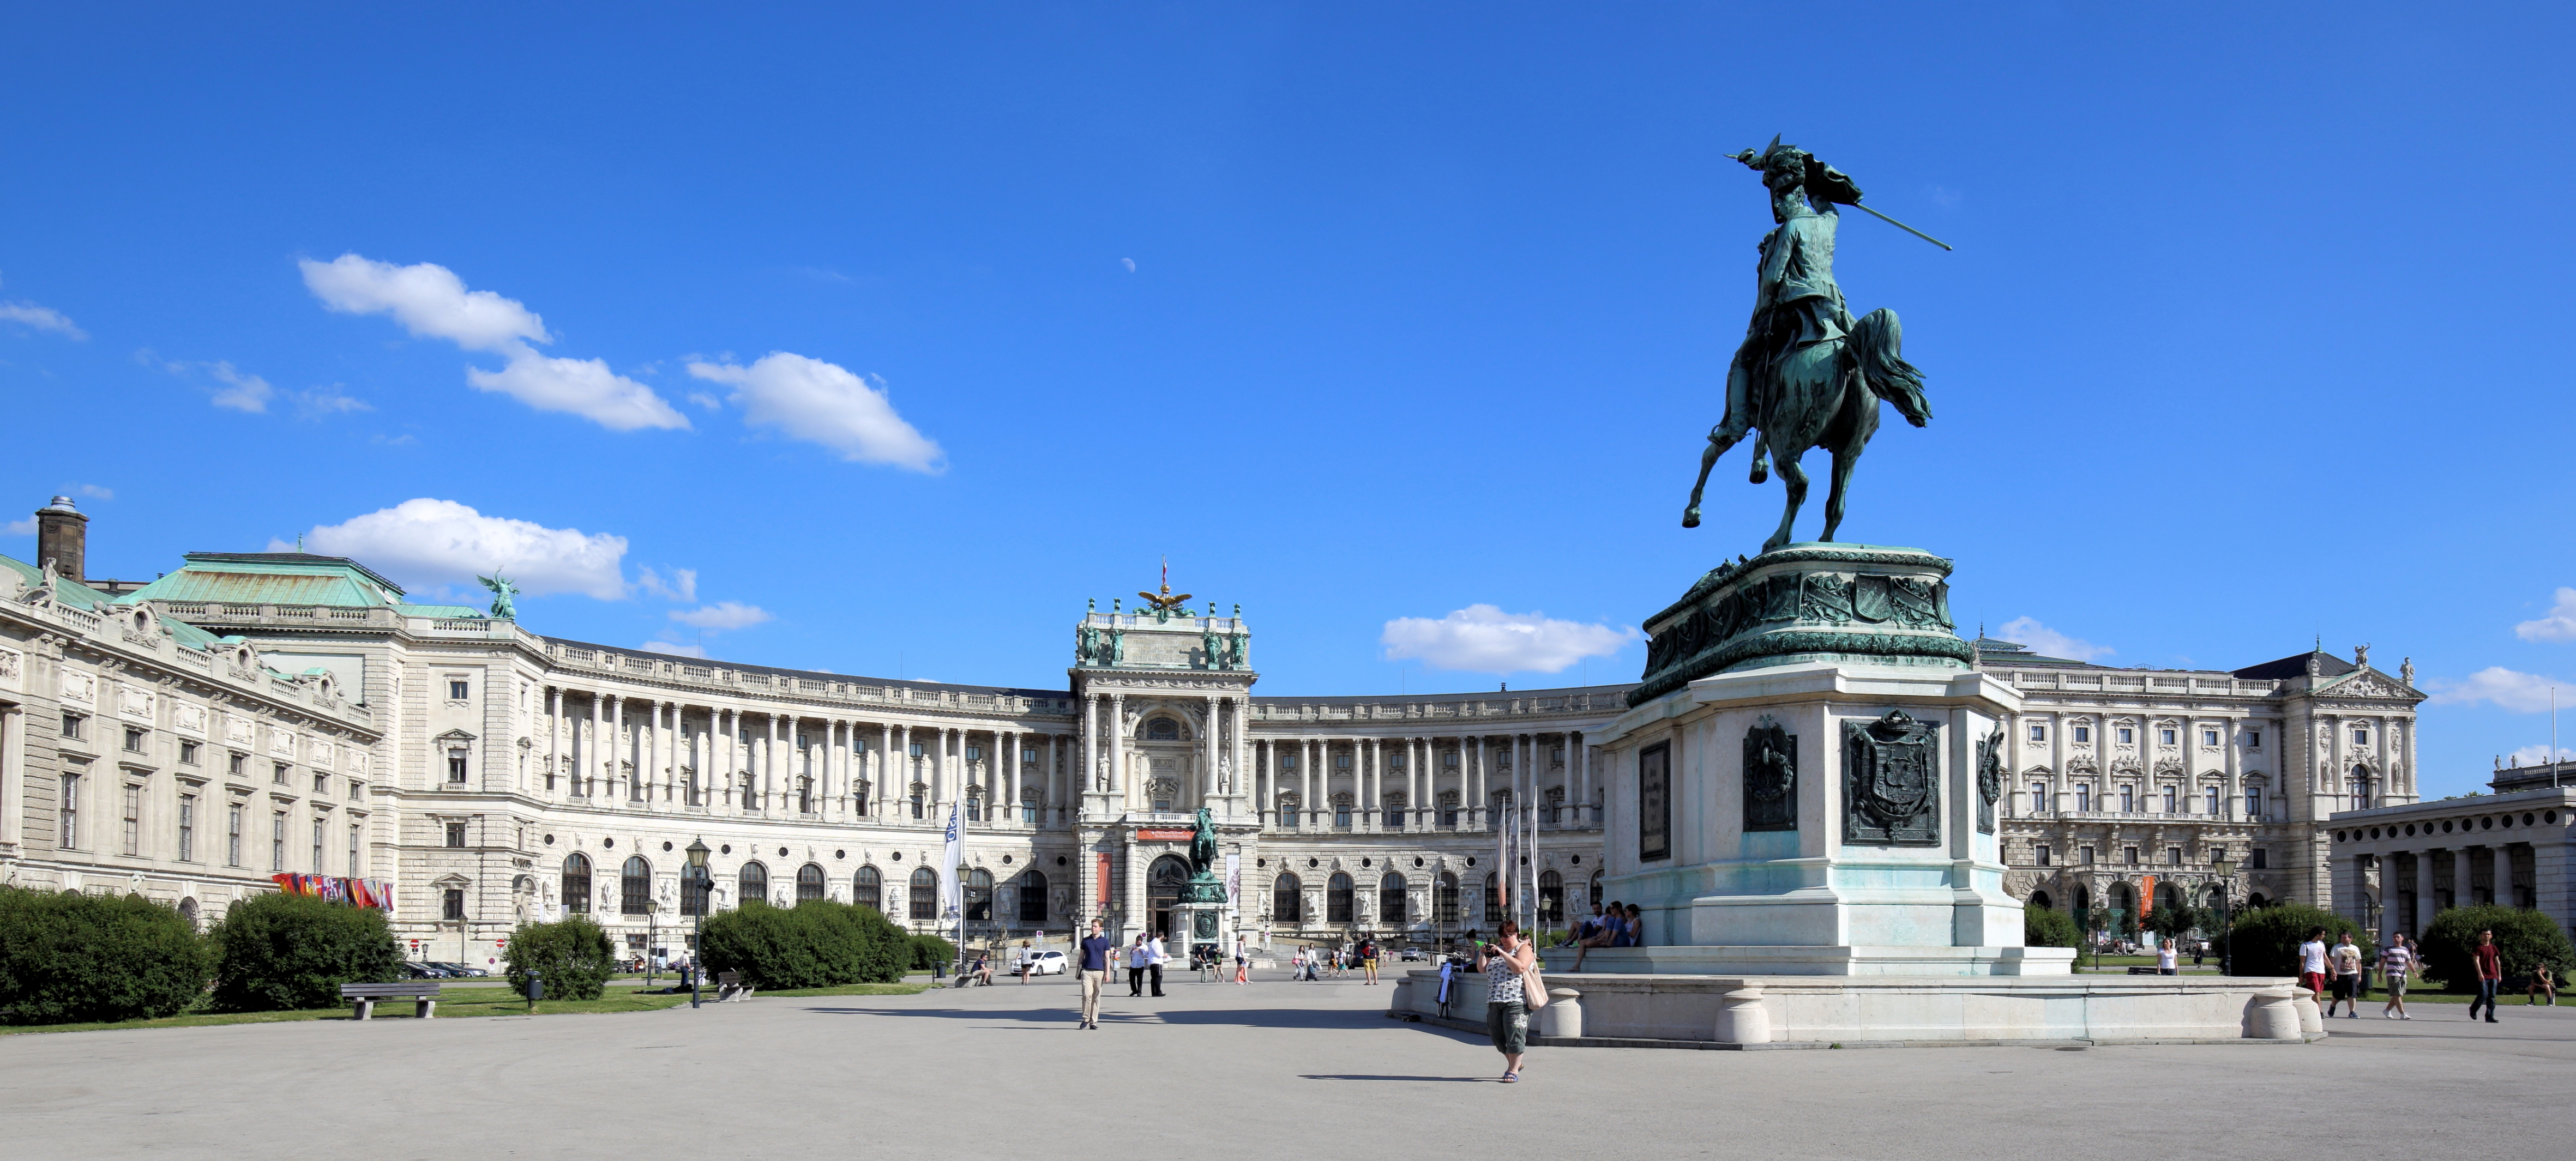 Roteiro pelo Centro Histórico de Viena_Heldenplatz_Viajando Bem